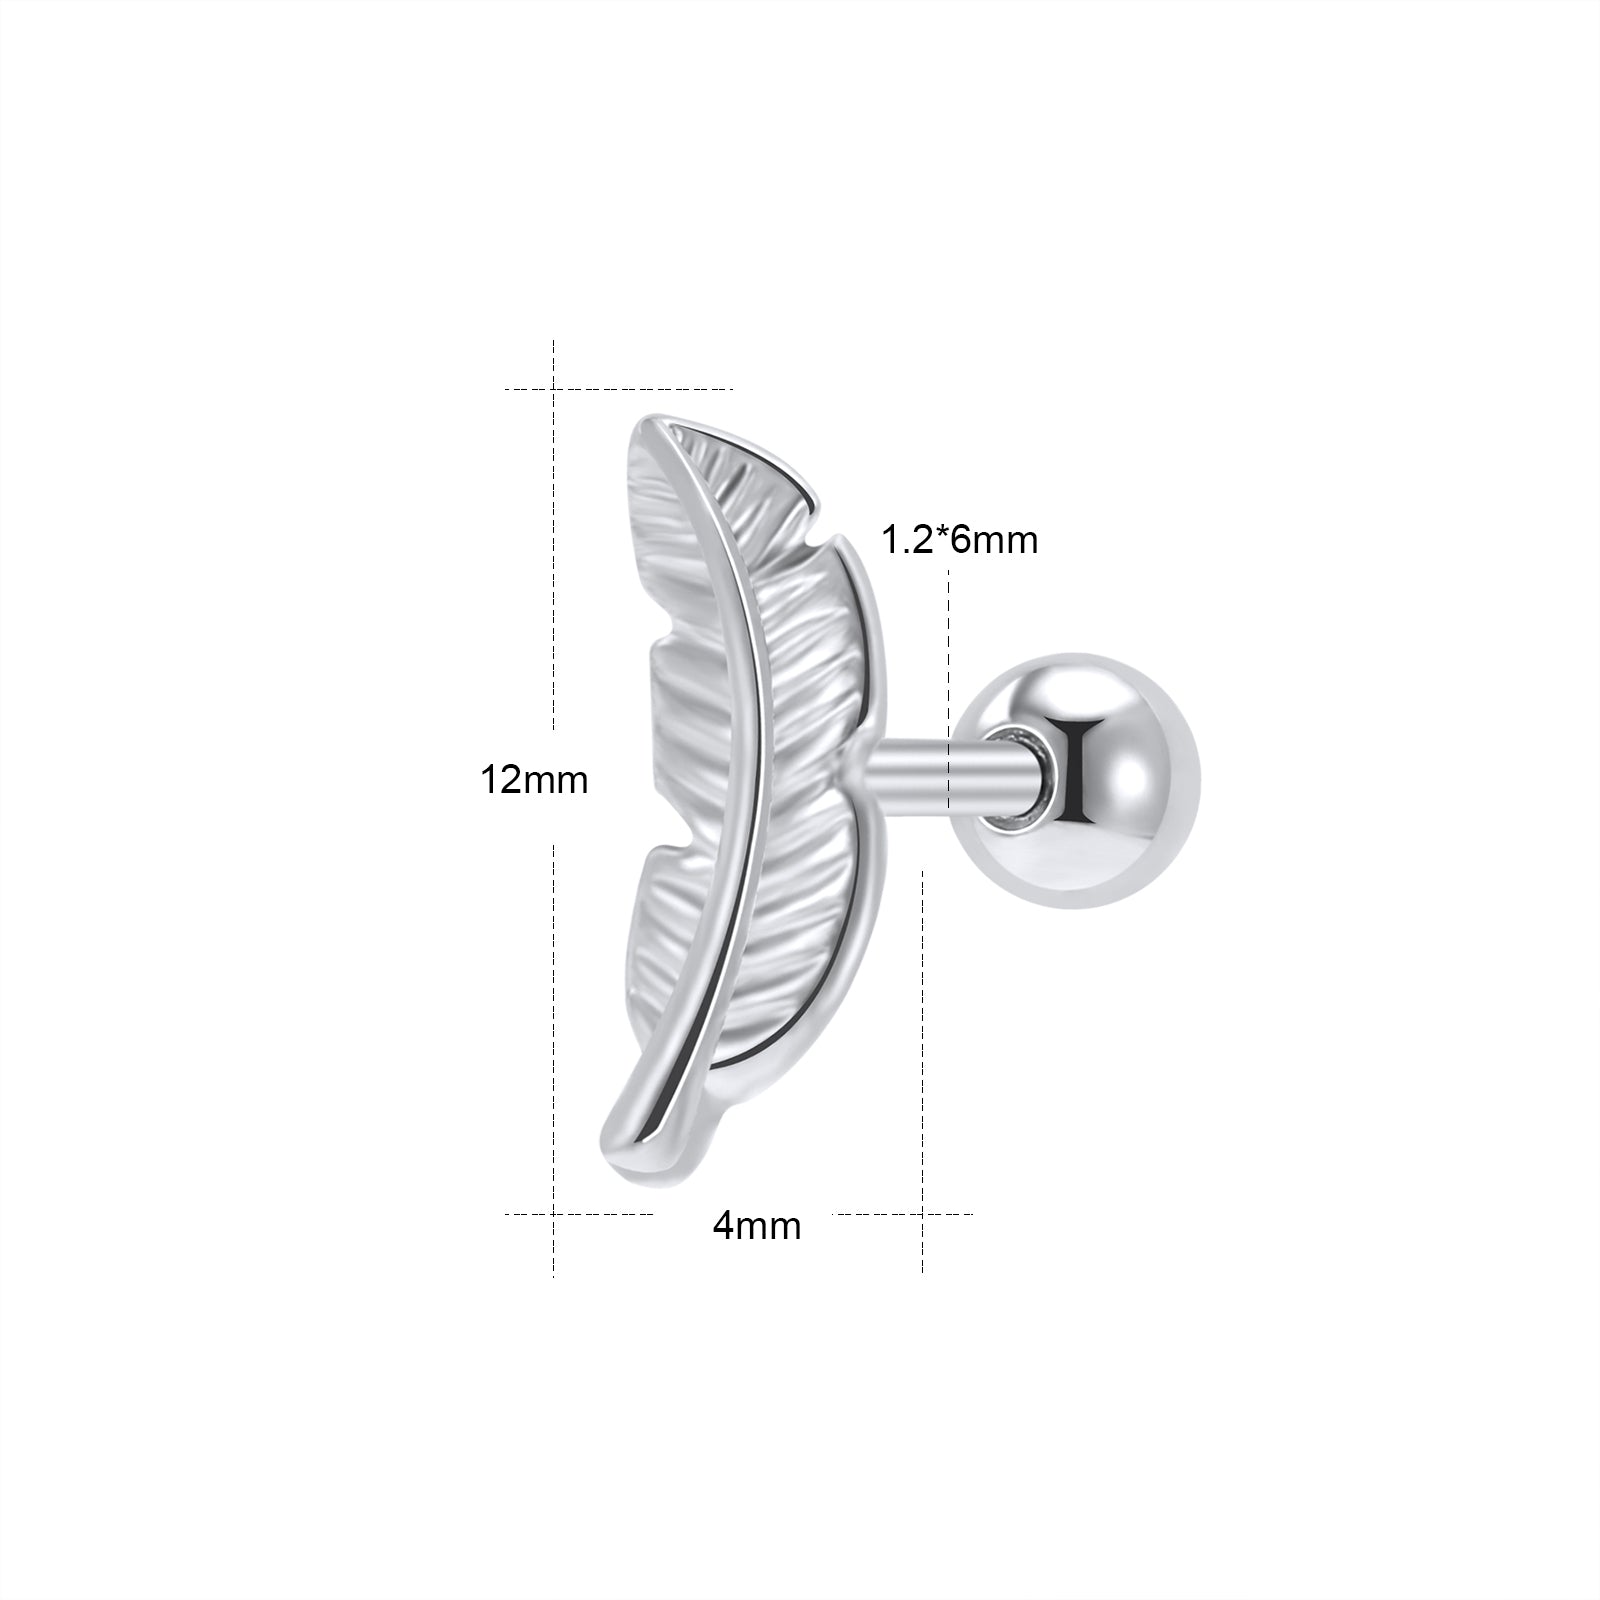 16G Rose Gold Leaf Stud Earring Silver Ear Stud Jewelry